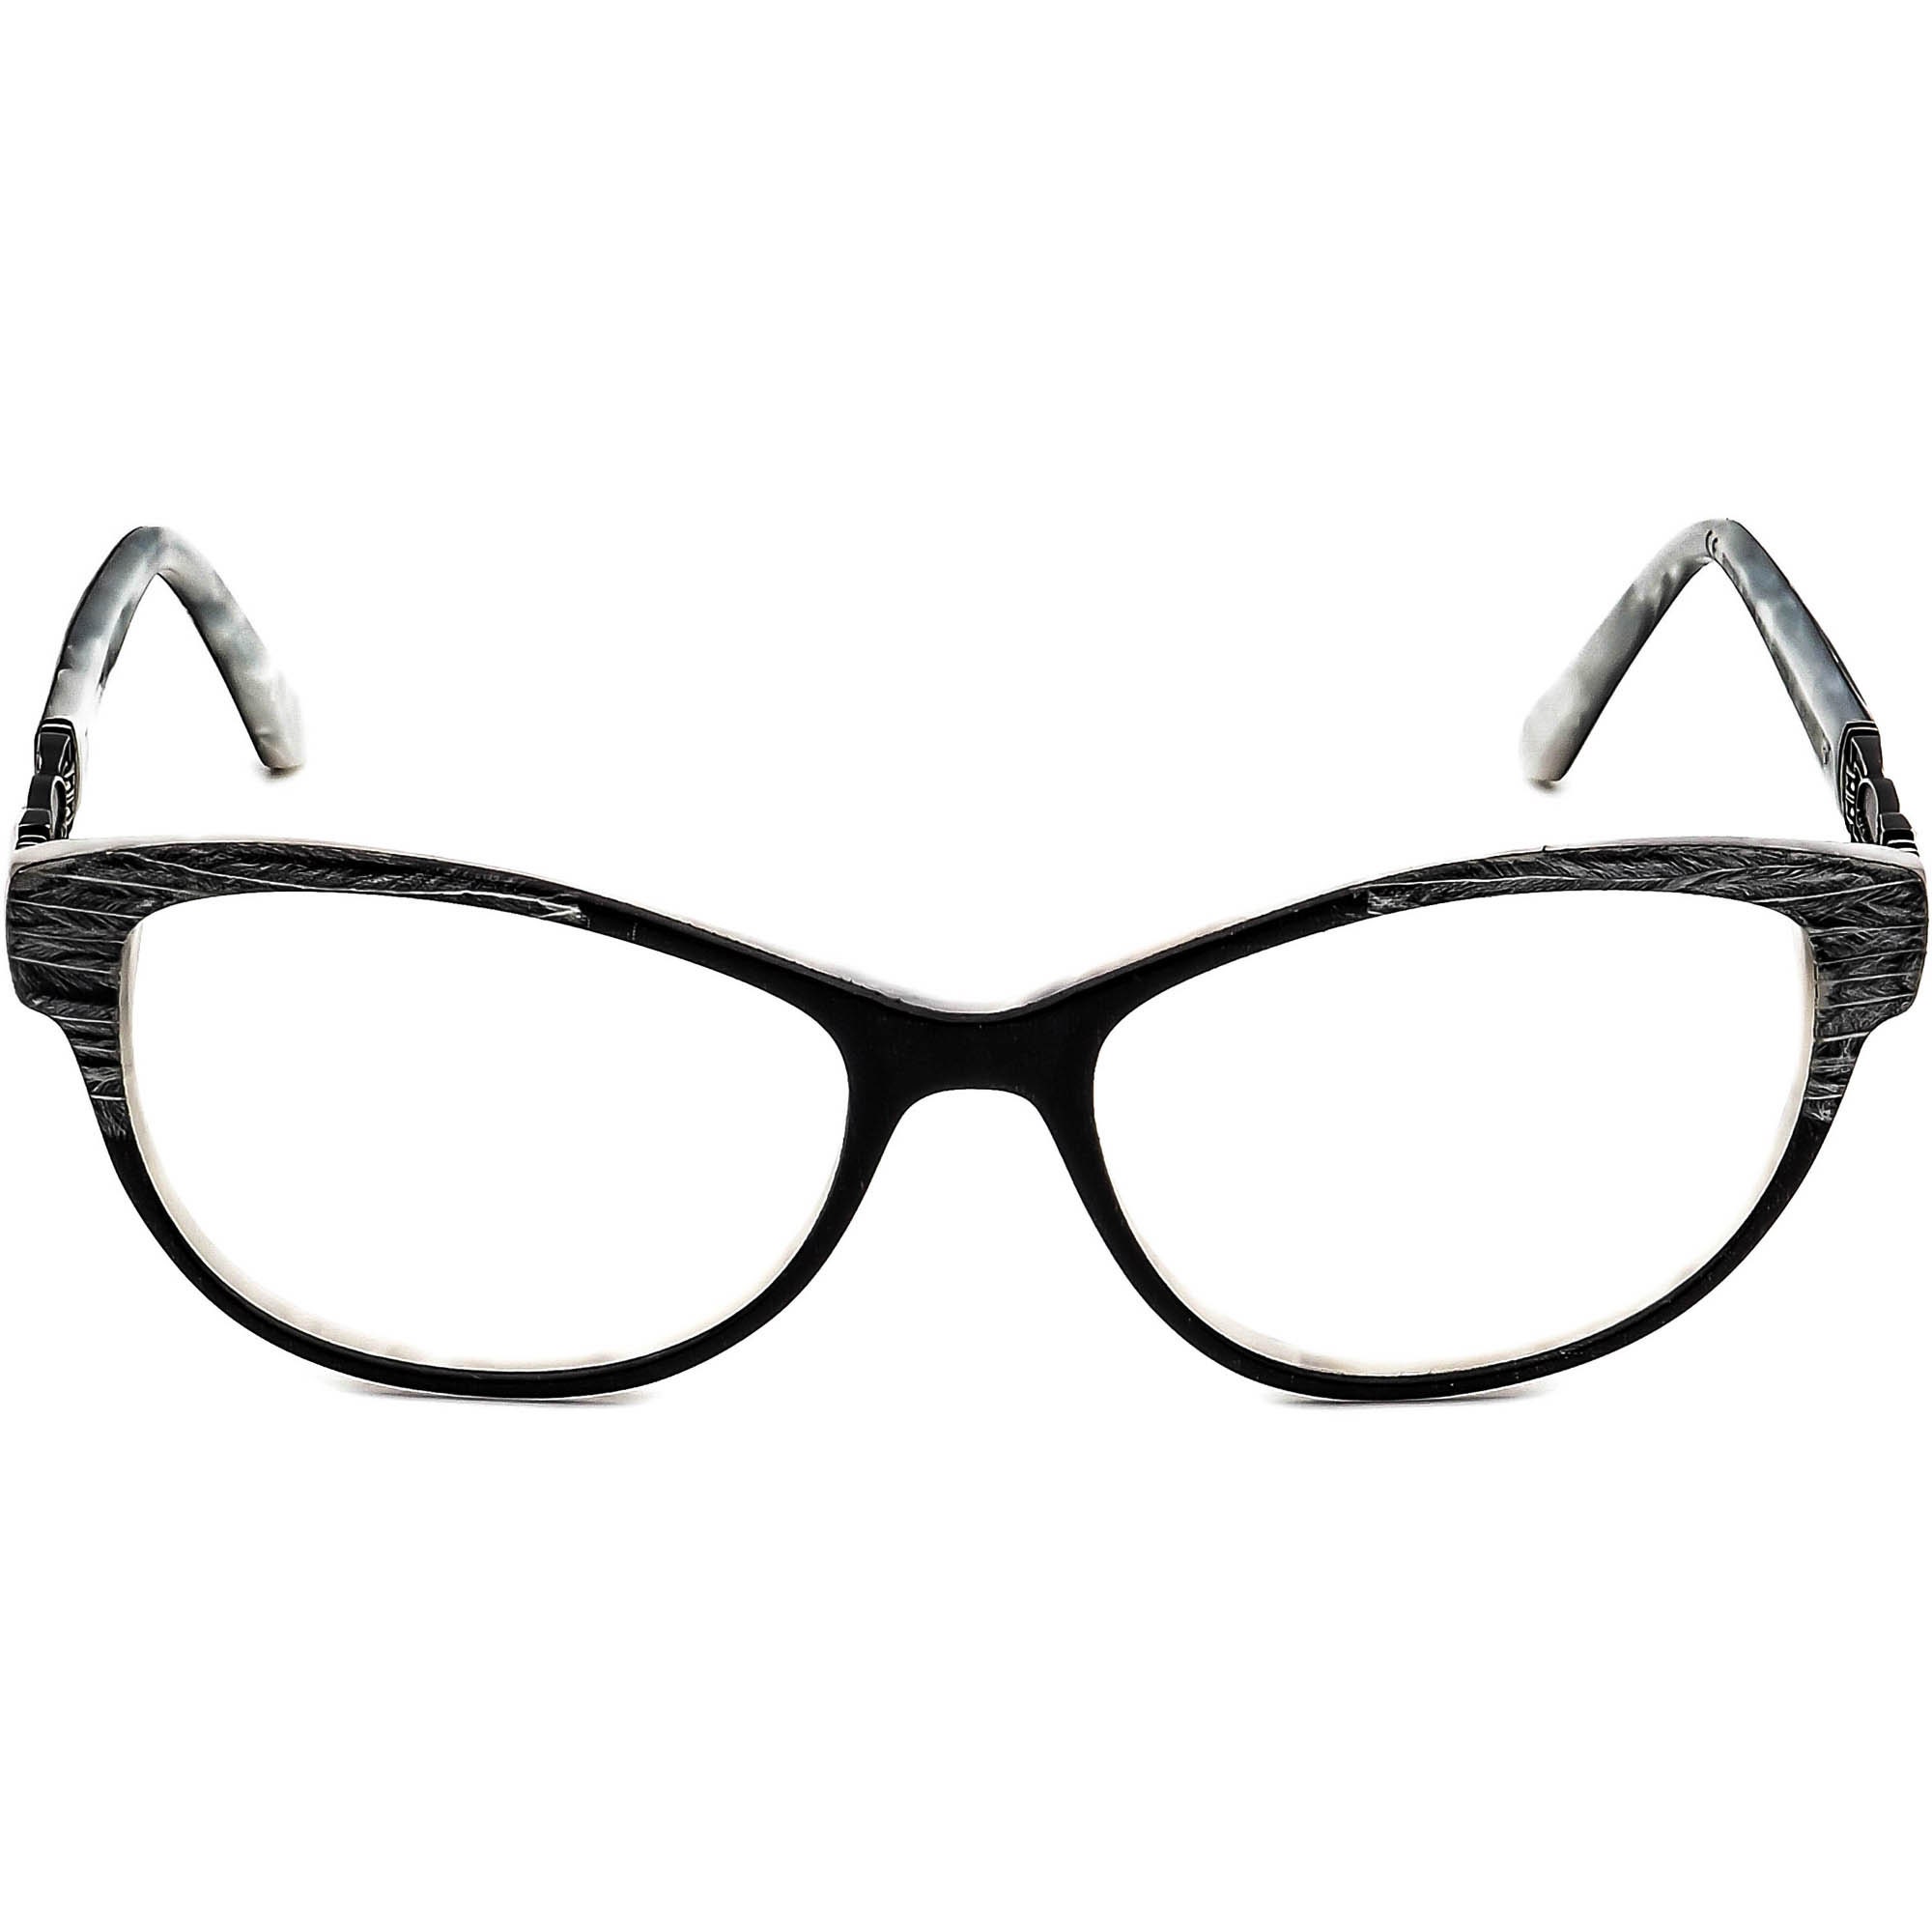 2000s glasses - Gem